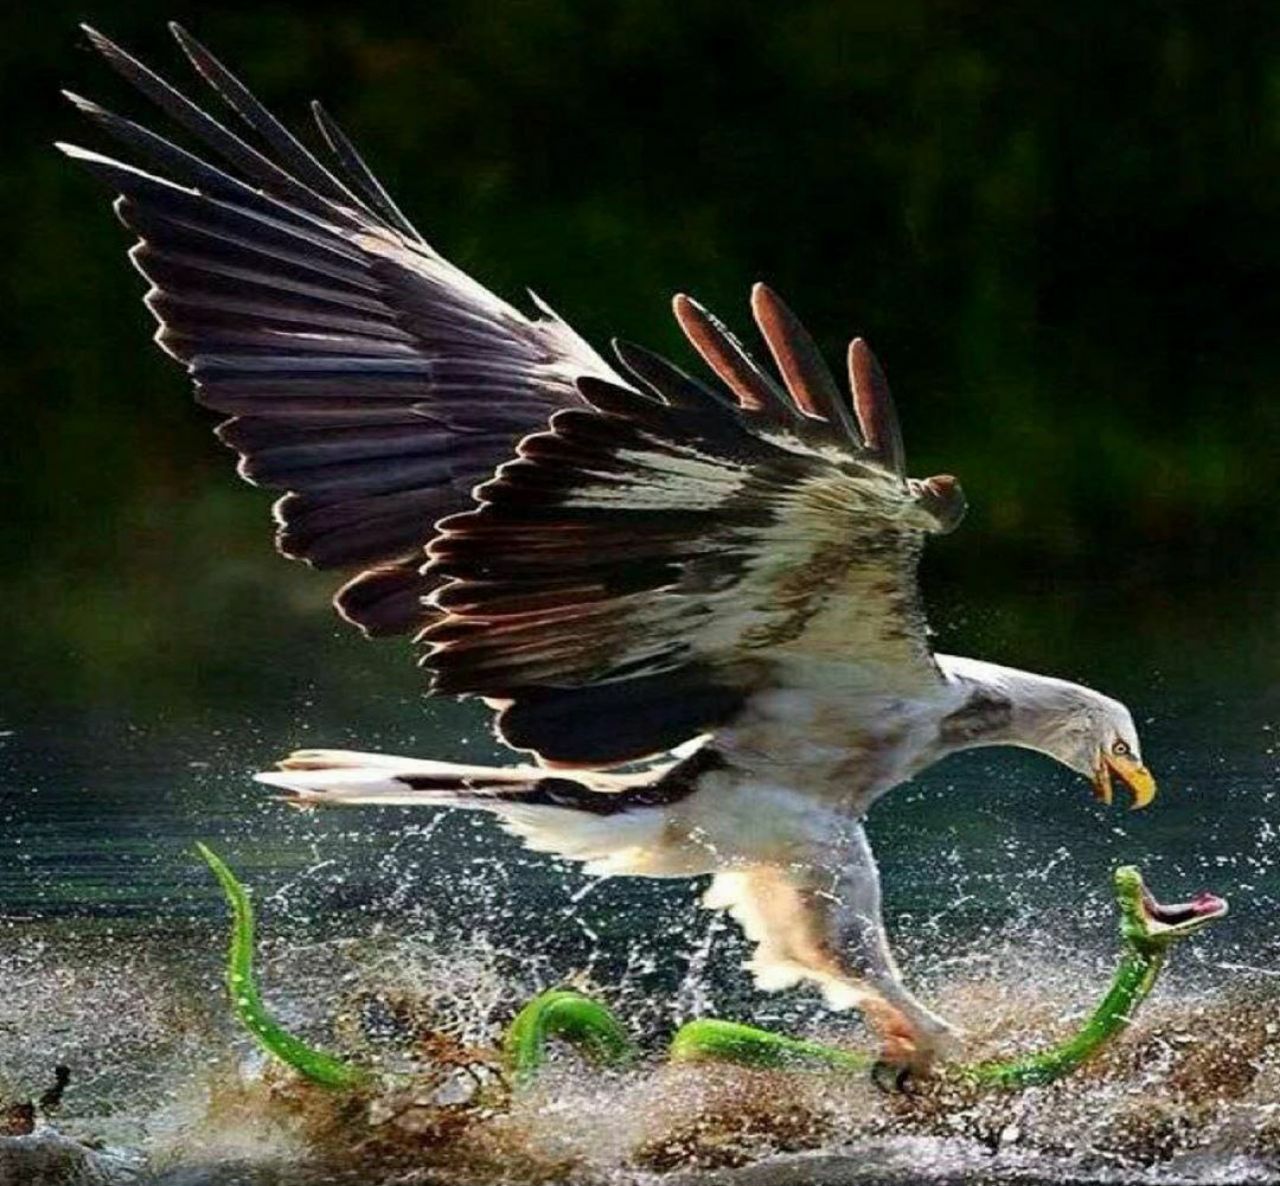 تصویر تماشایی از شکار مار توسط عقاب